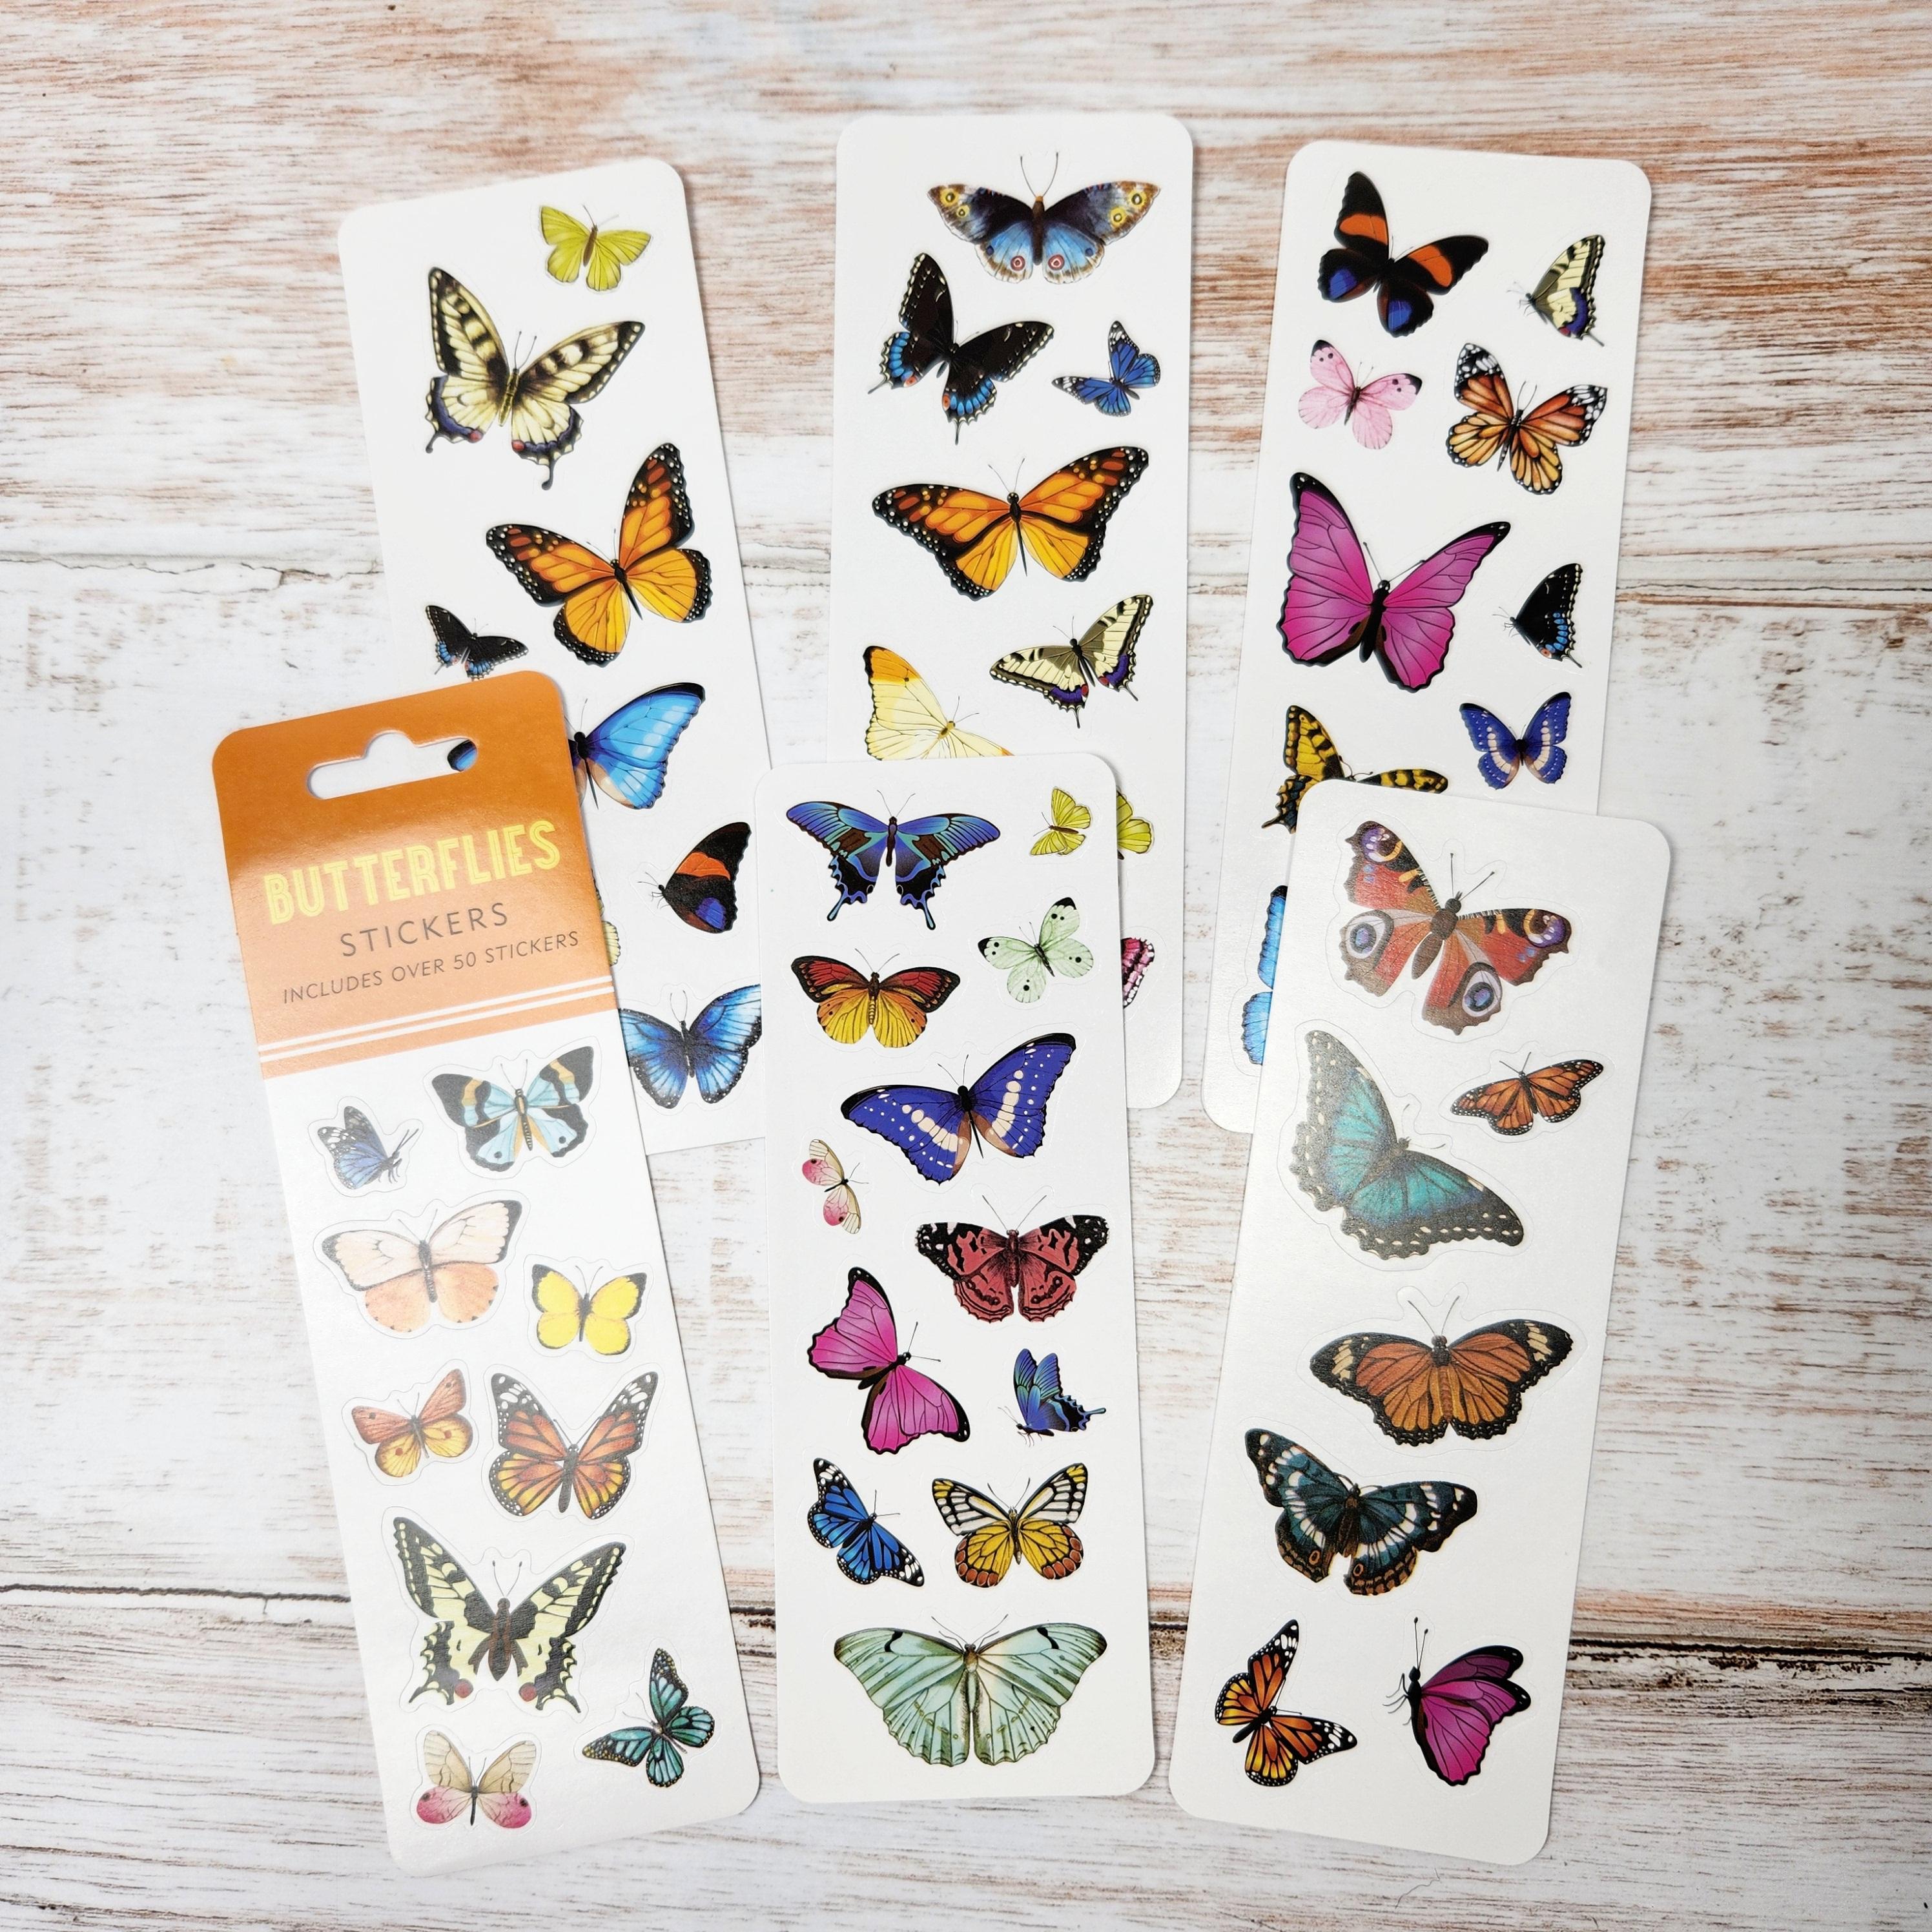 Peter Pauper Press Butterflies Sticker Set 6 sheets with colourful butterflies - Paper Kooka Australia